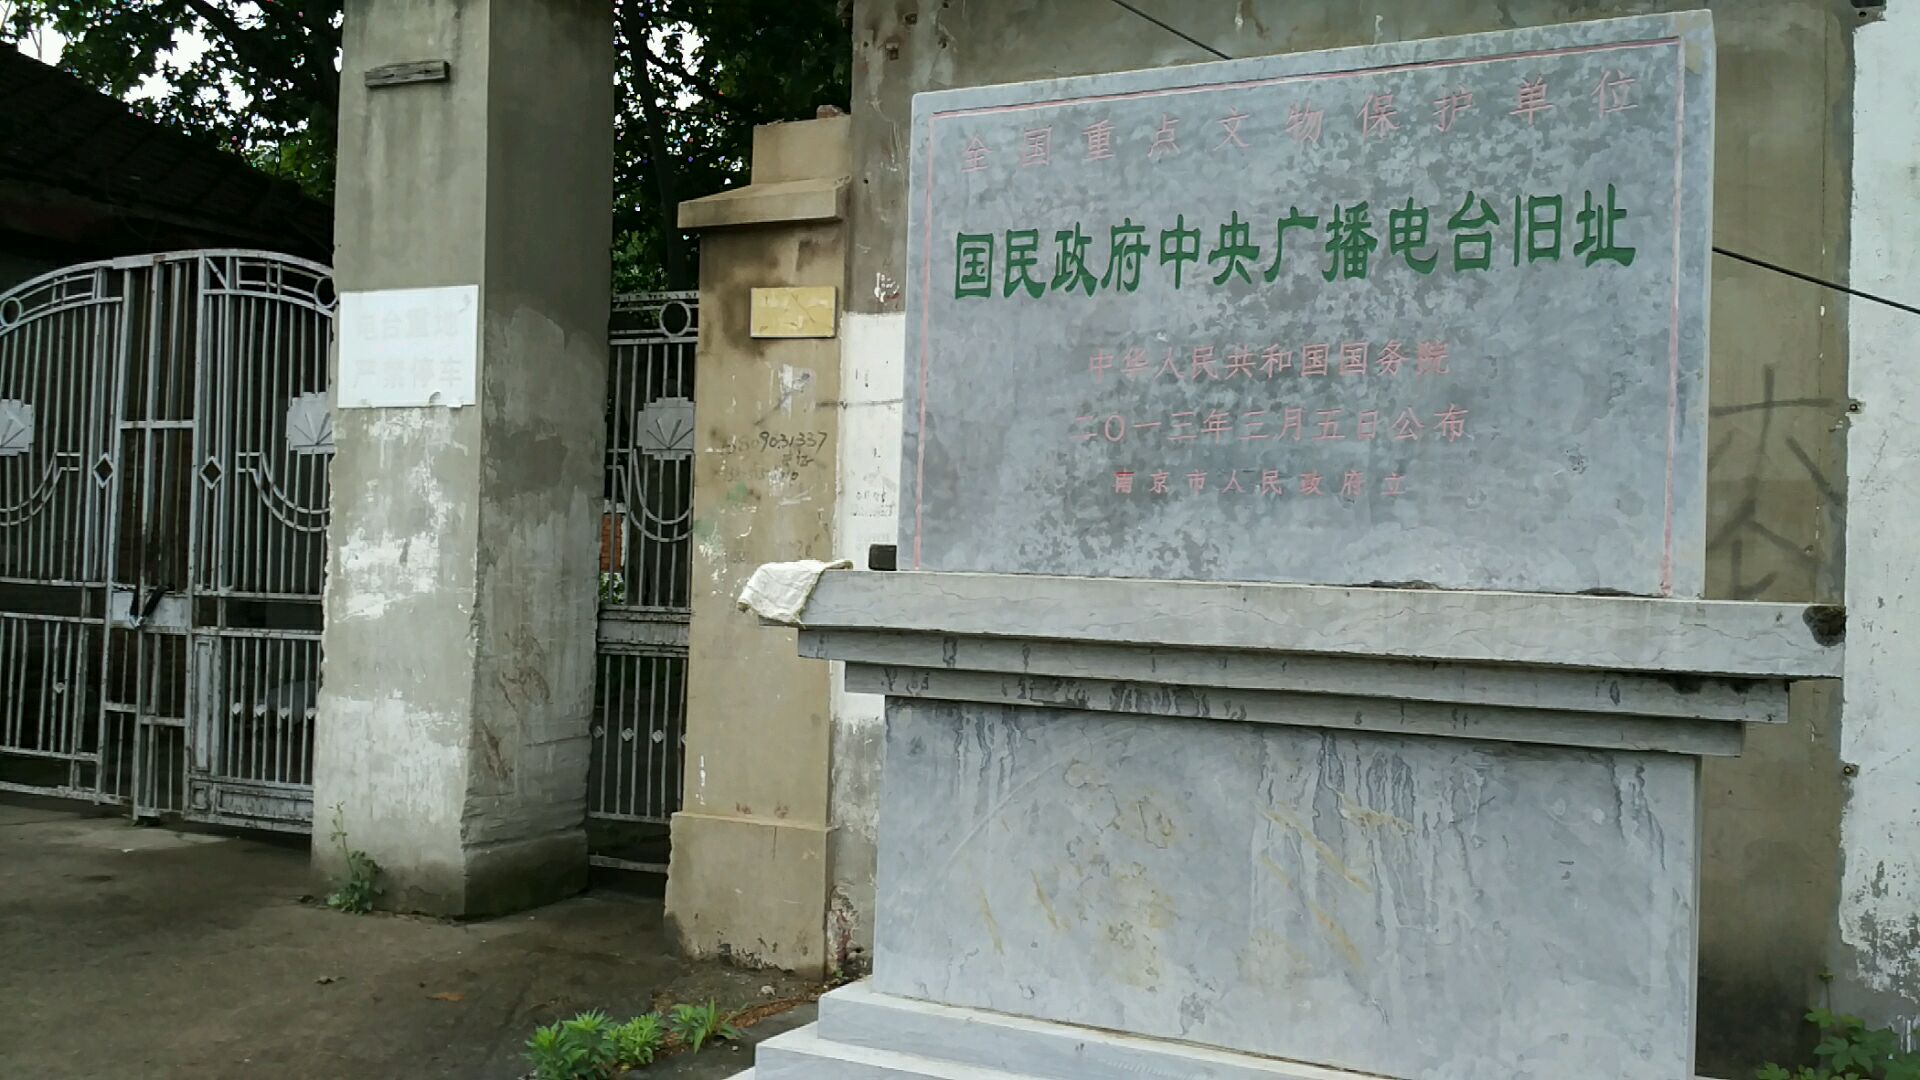 中央人民广播电台旧址图片